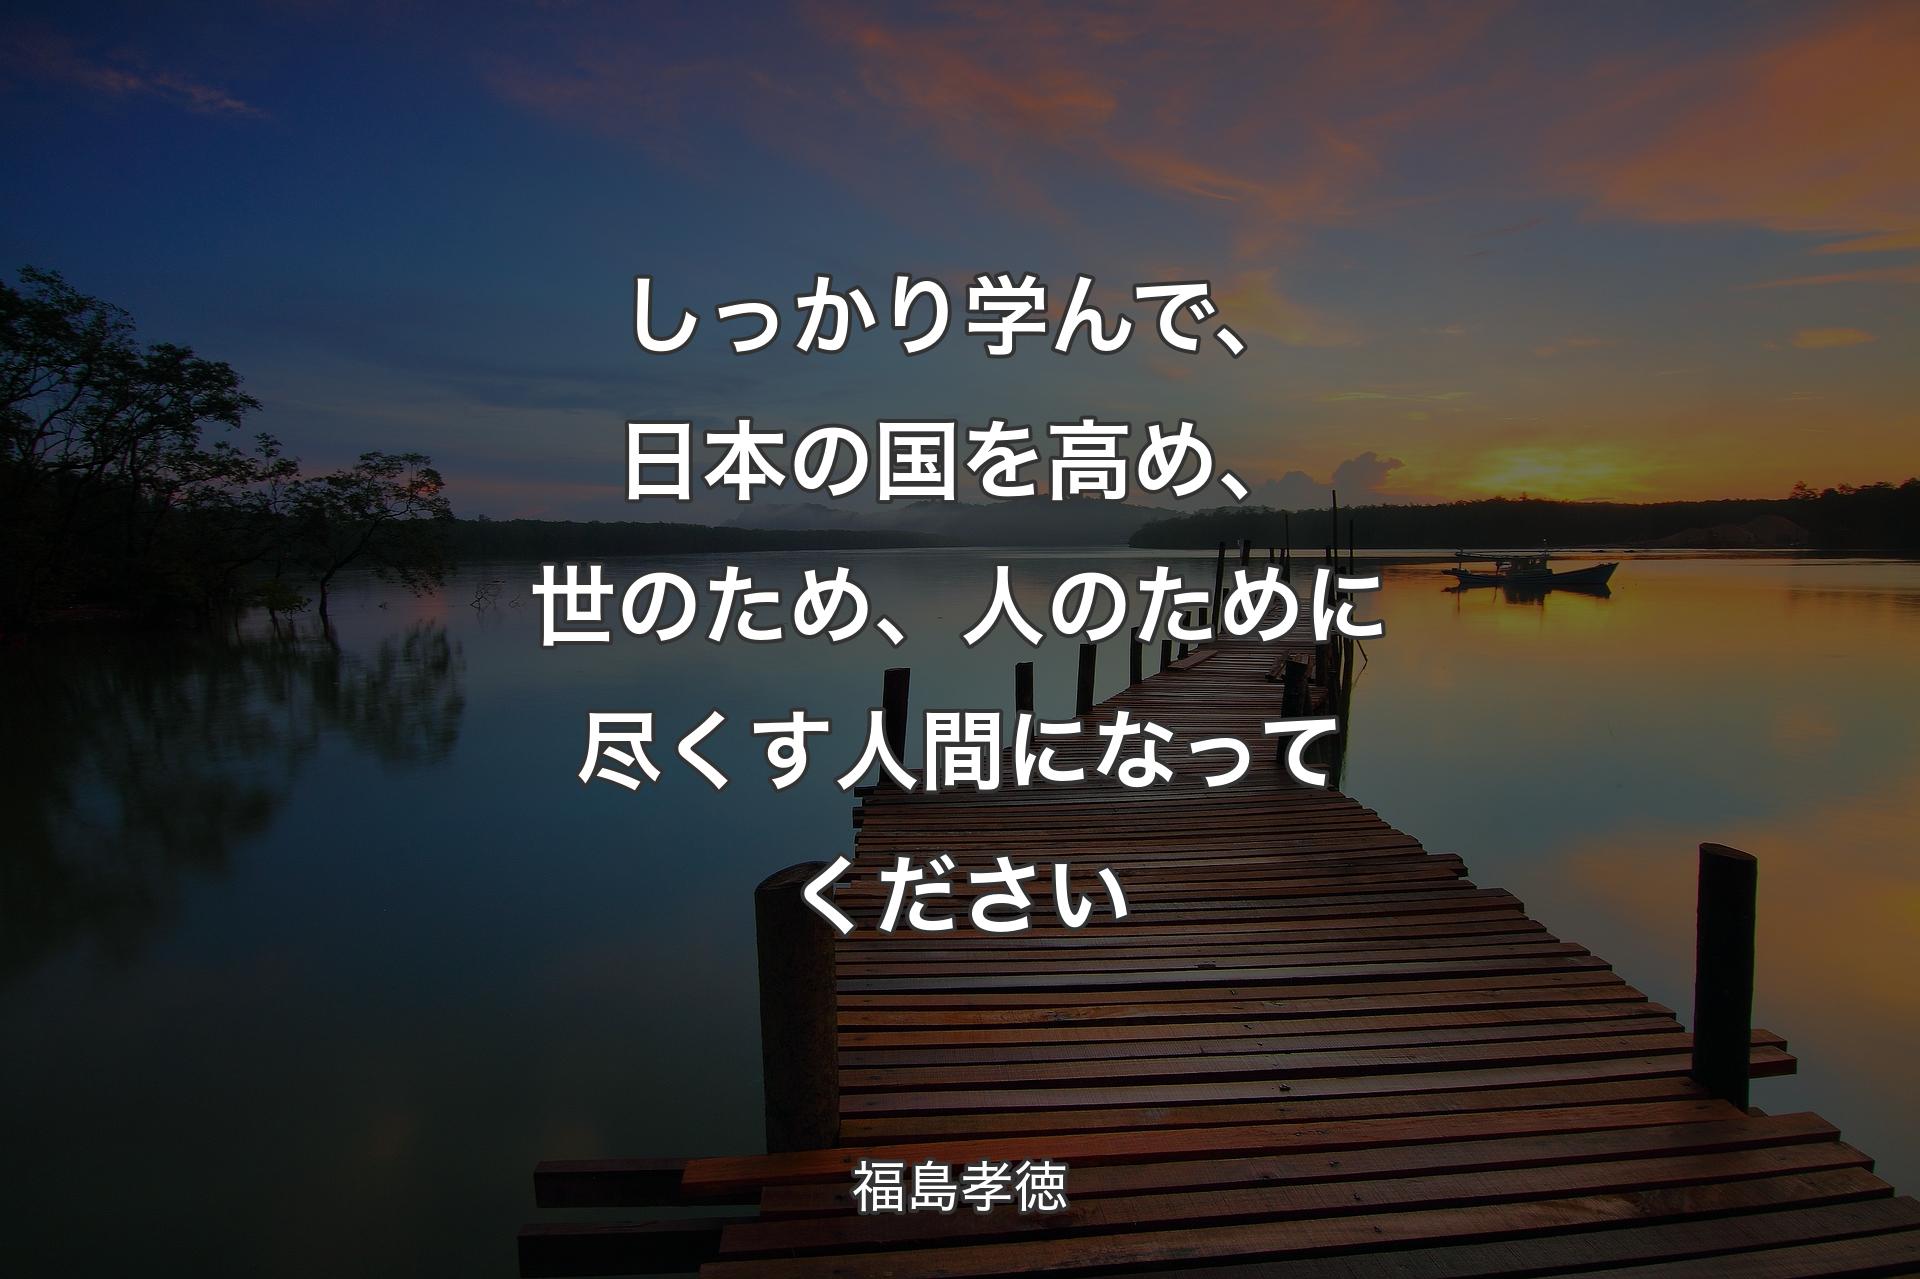 【背景3】しっかり学んで、日本の国を高め、世のため、人のために尽くす人間になってください - 福島孝徳